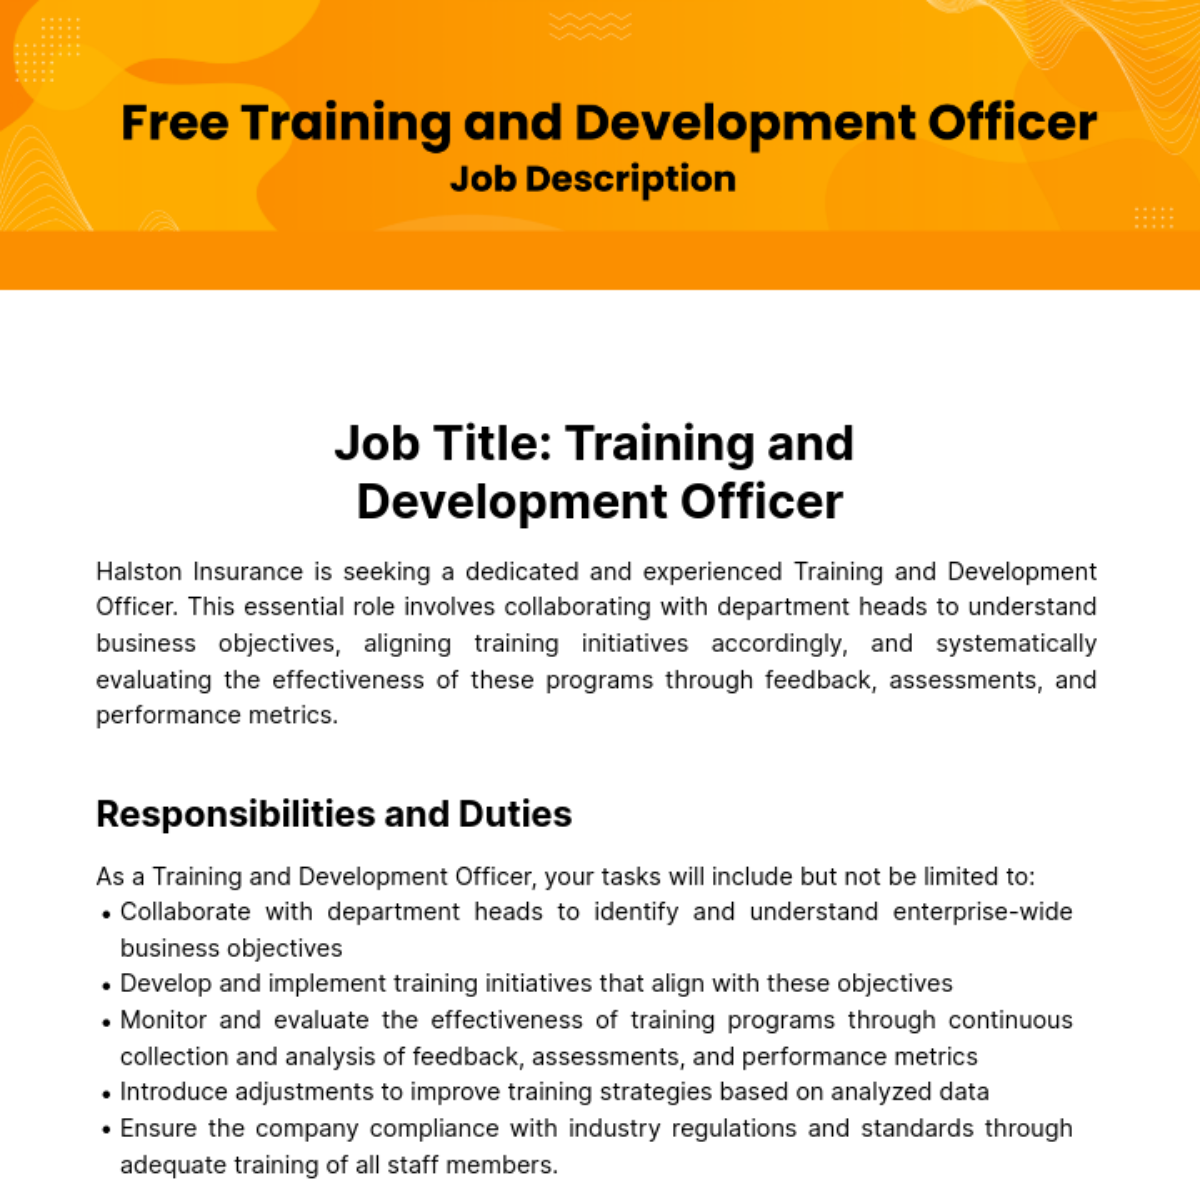 Training and Development Officer Job Description Template